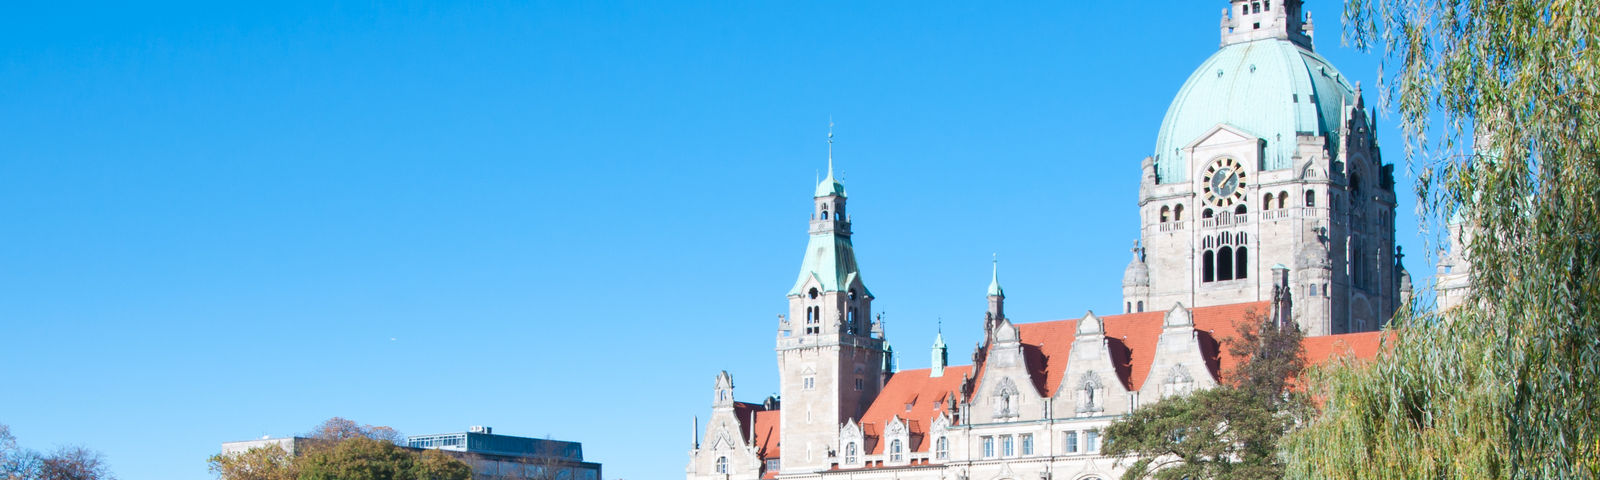 Blick auf das Neue Rathaus in Hannover